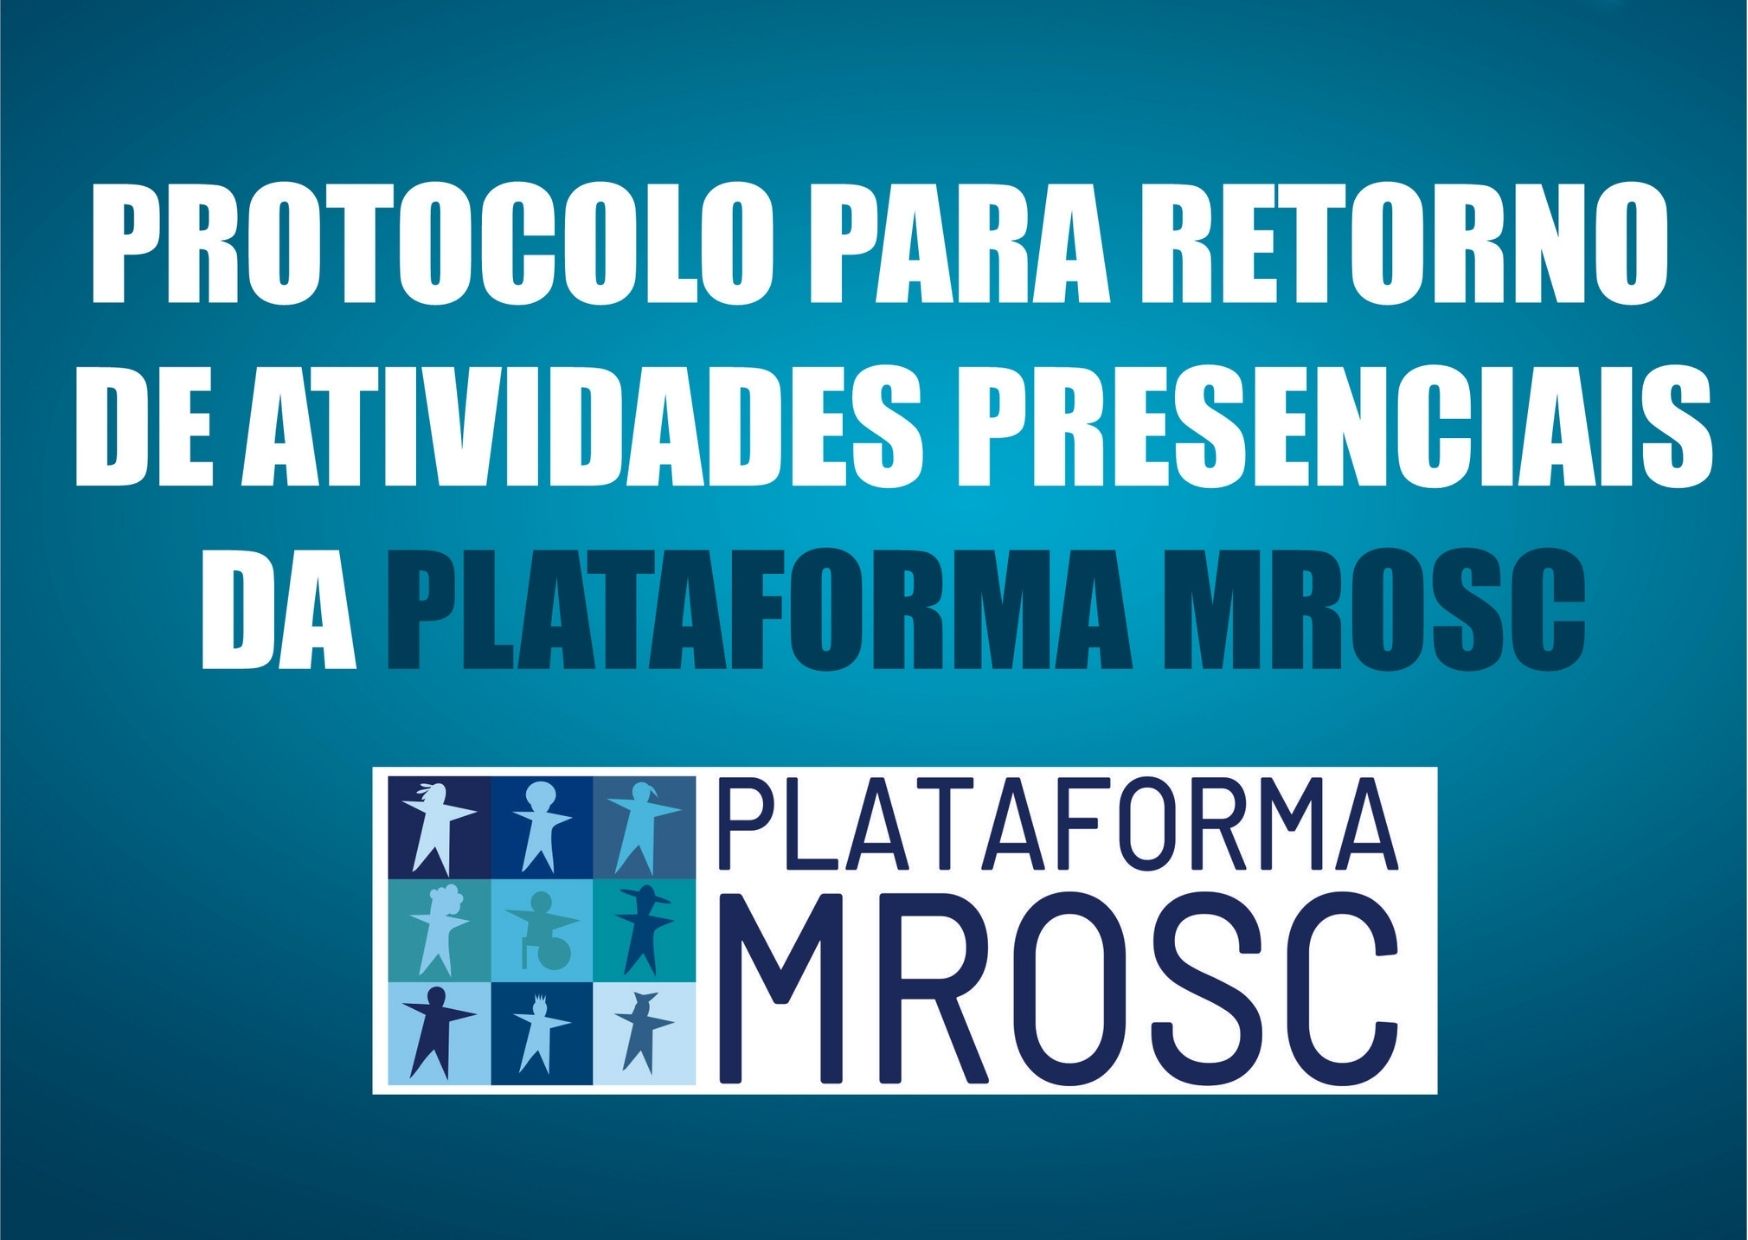 PROTOCOLO PARA RETORNO DE ATIVIDADES PRESENCIAIS DA PLATAFORMA MROSC